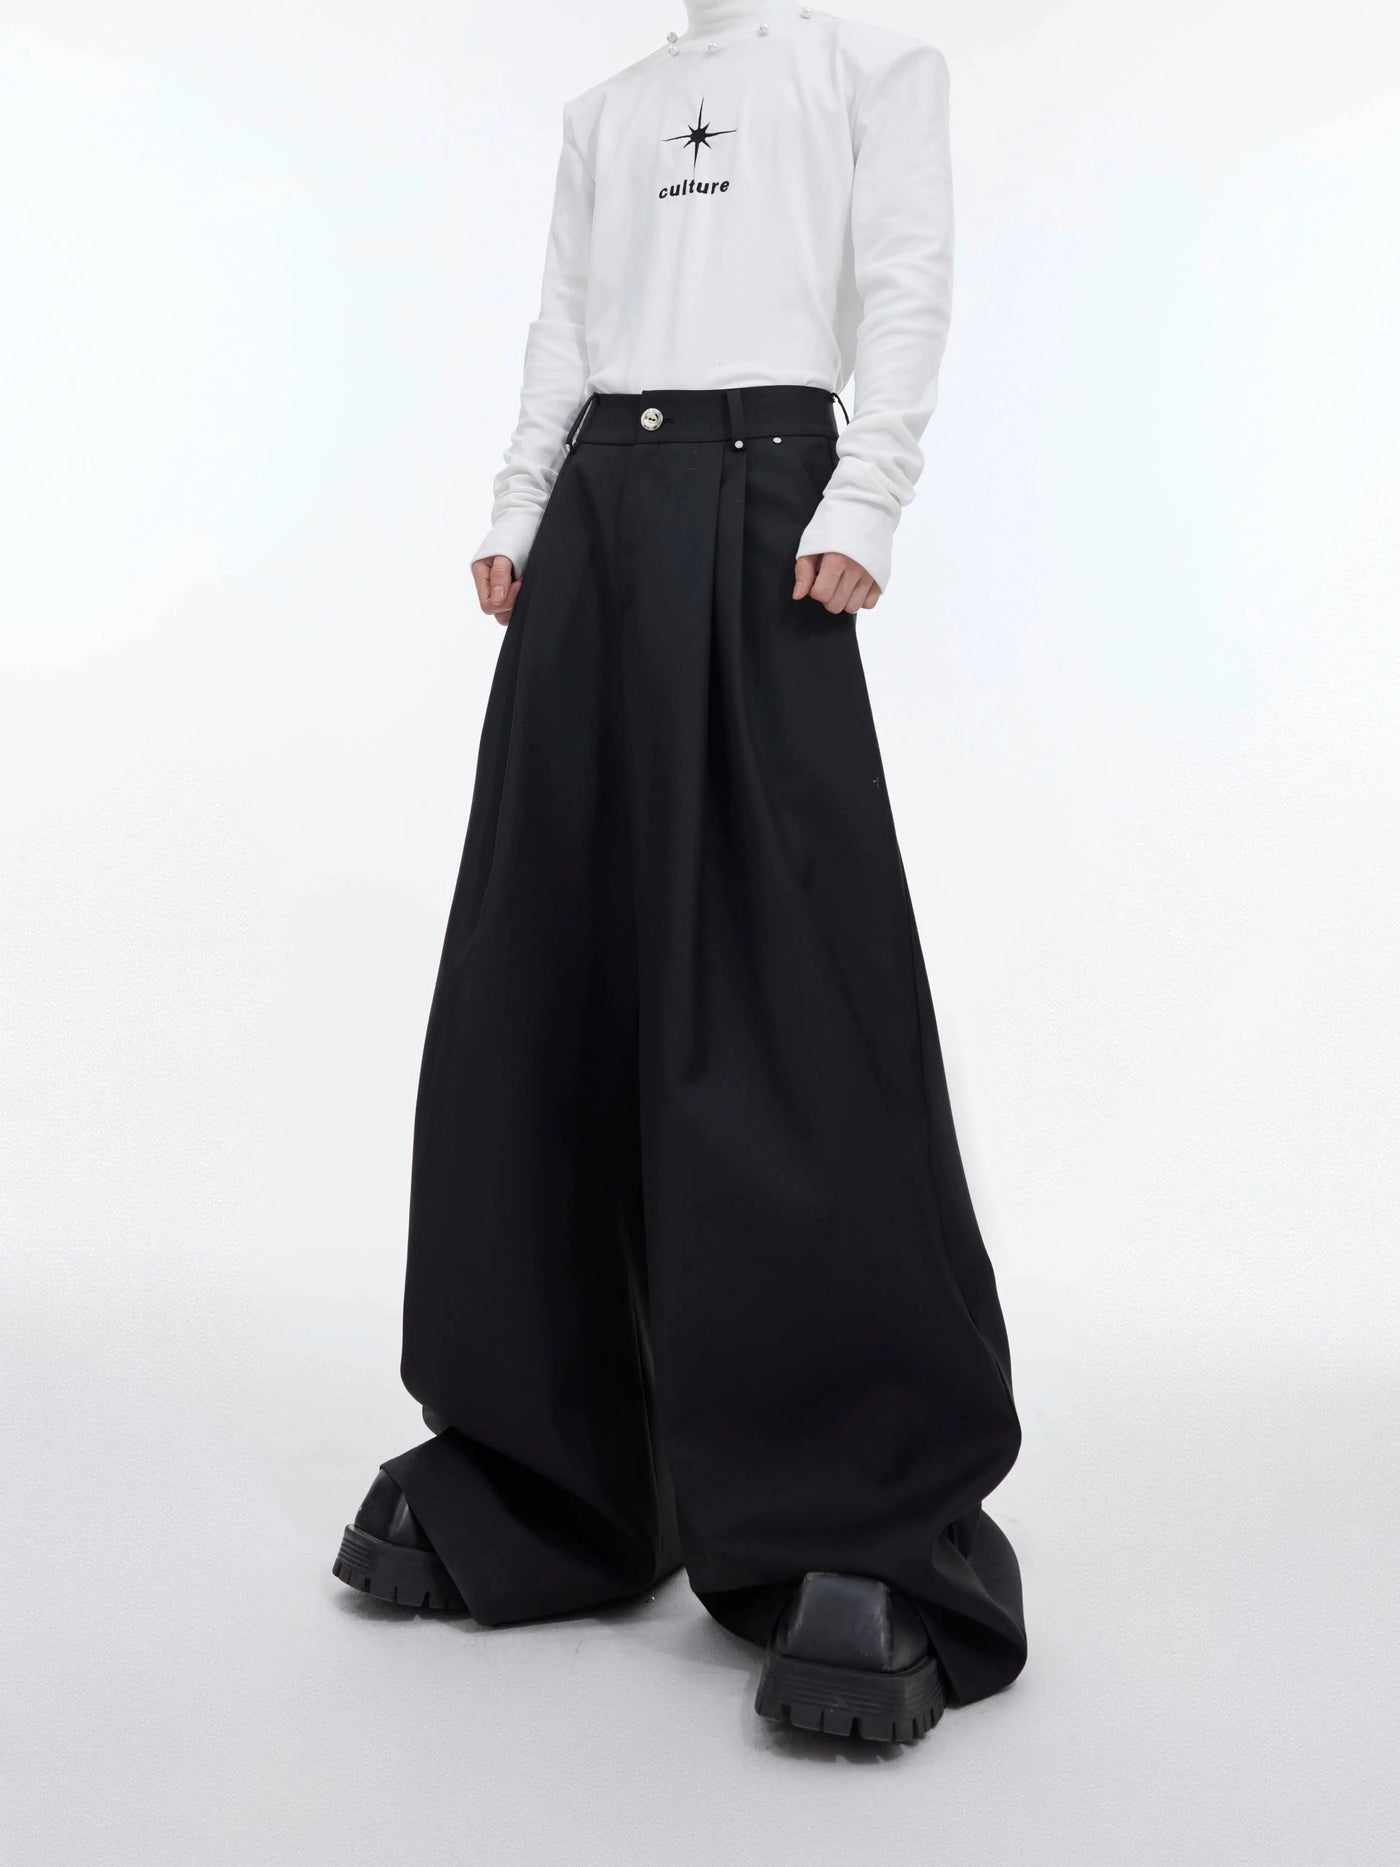 Loose Leg Drapey Pants Korean Street Fashion Pants By Argue Culture Shop Online at OH Vault